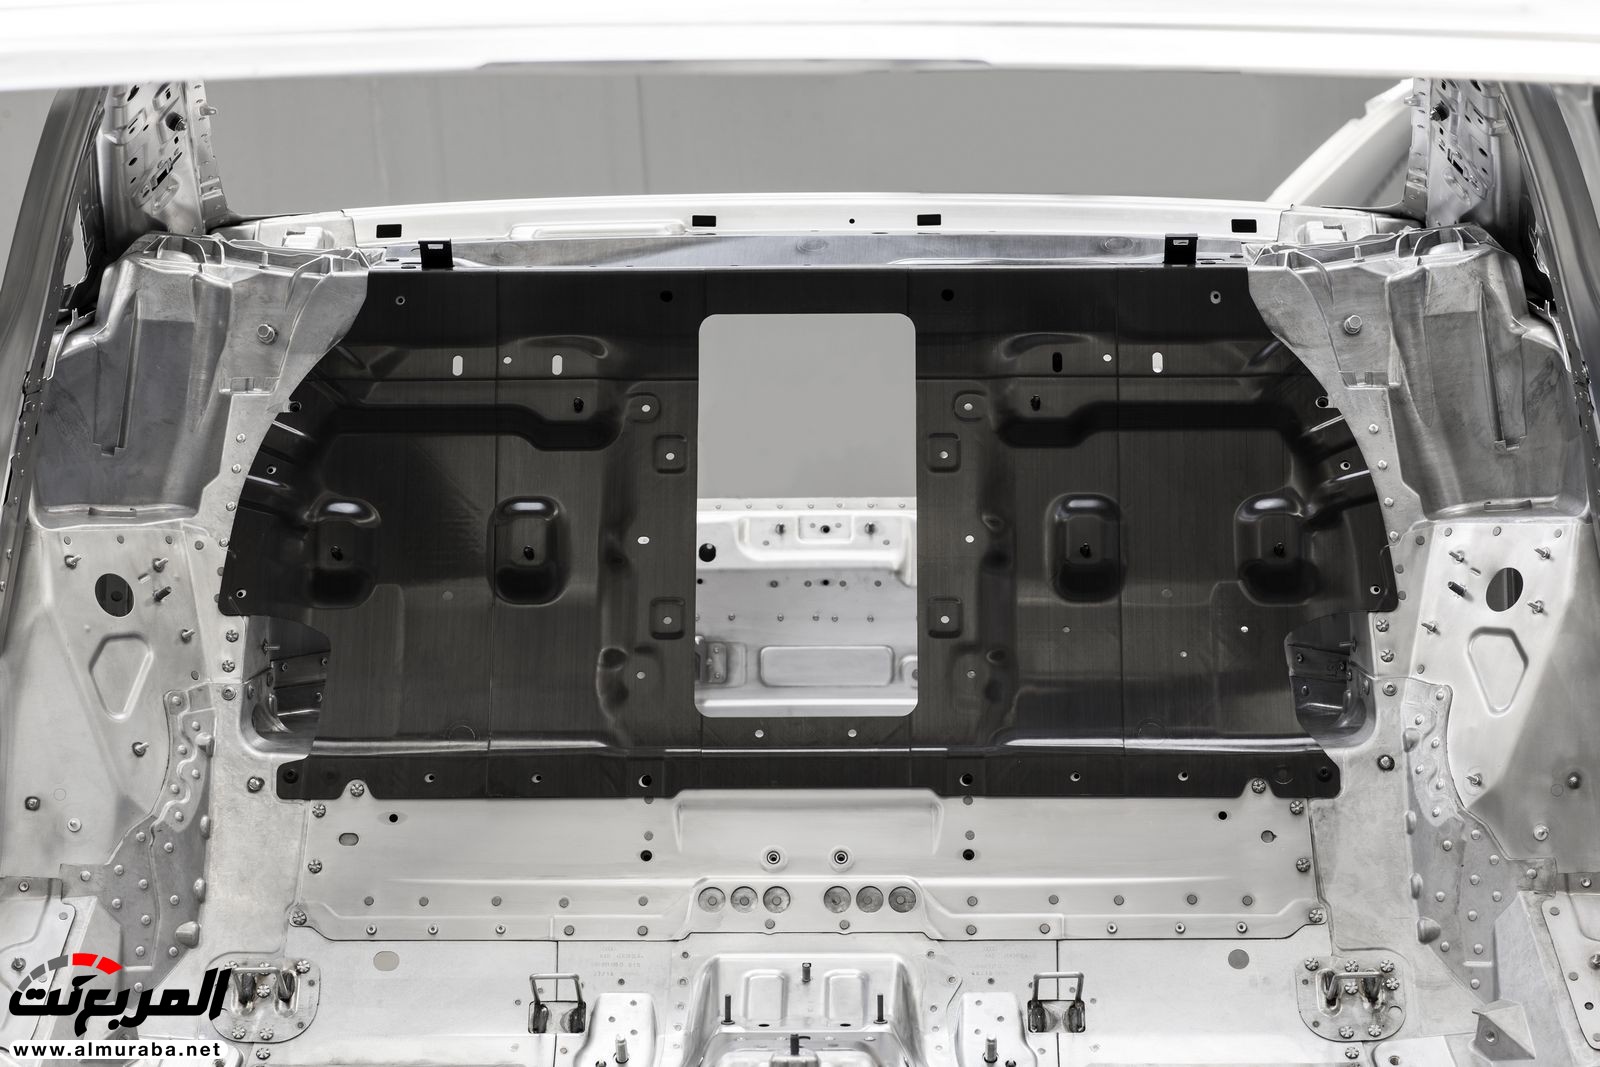 أودي A8 2018 الجديدة كلياً تكشف نفسها بتصميم وتقنيات متطورة "معلومات + 100 صورة" Audi A8 53